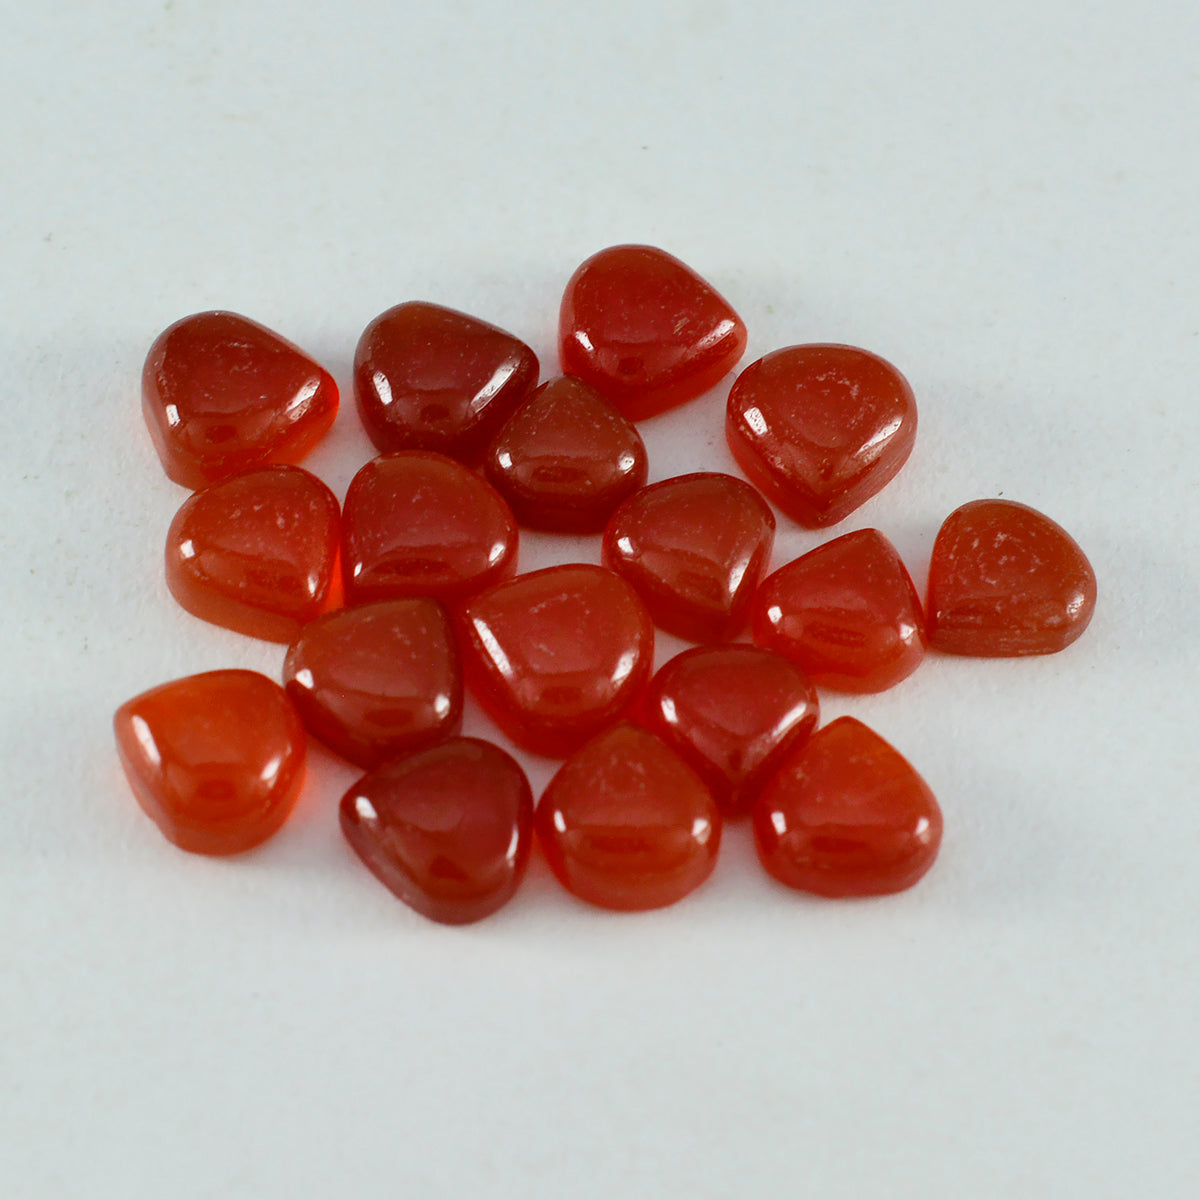 riyogems 1pc cabochon onyx rouge 6x6 mm en forme de coeur gemme de qualité attrayante